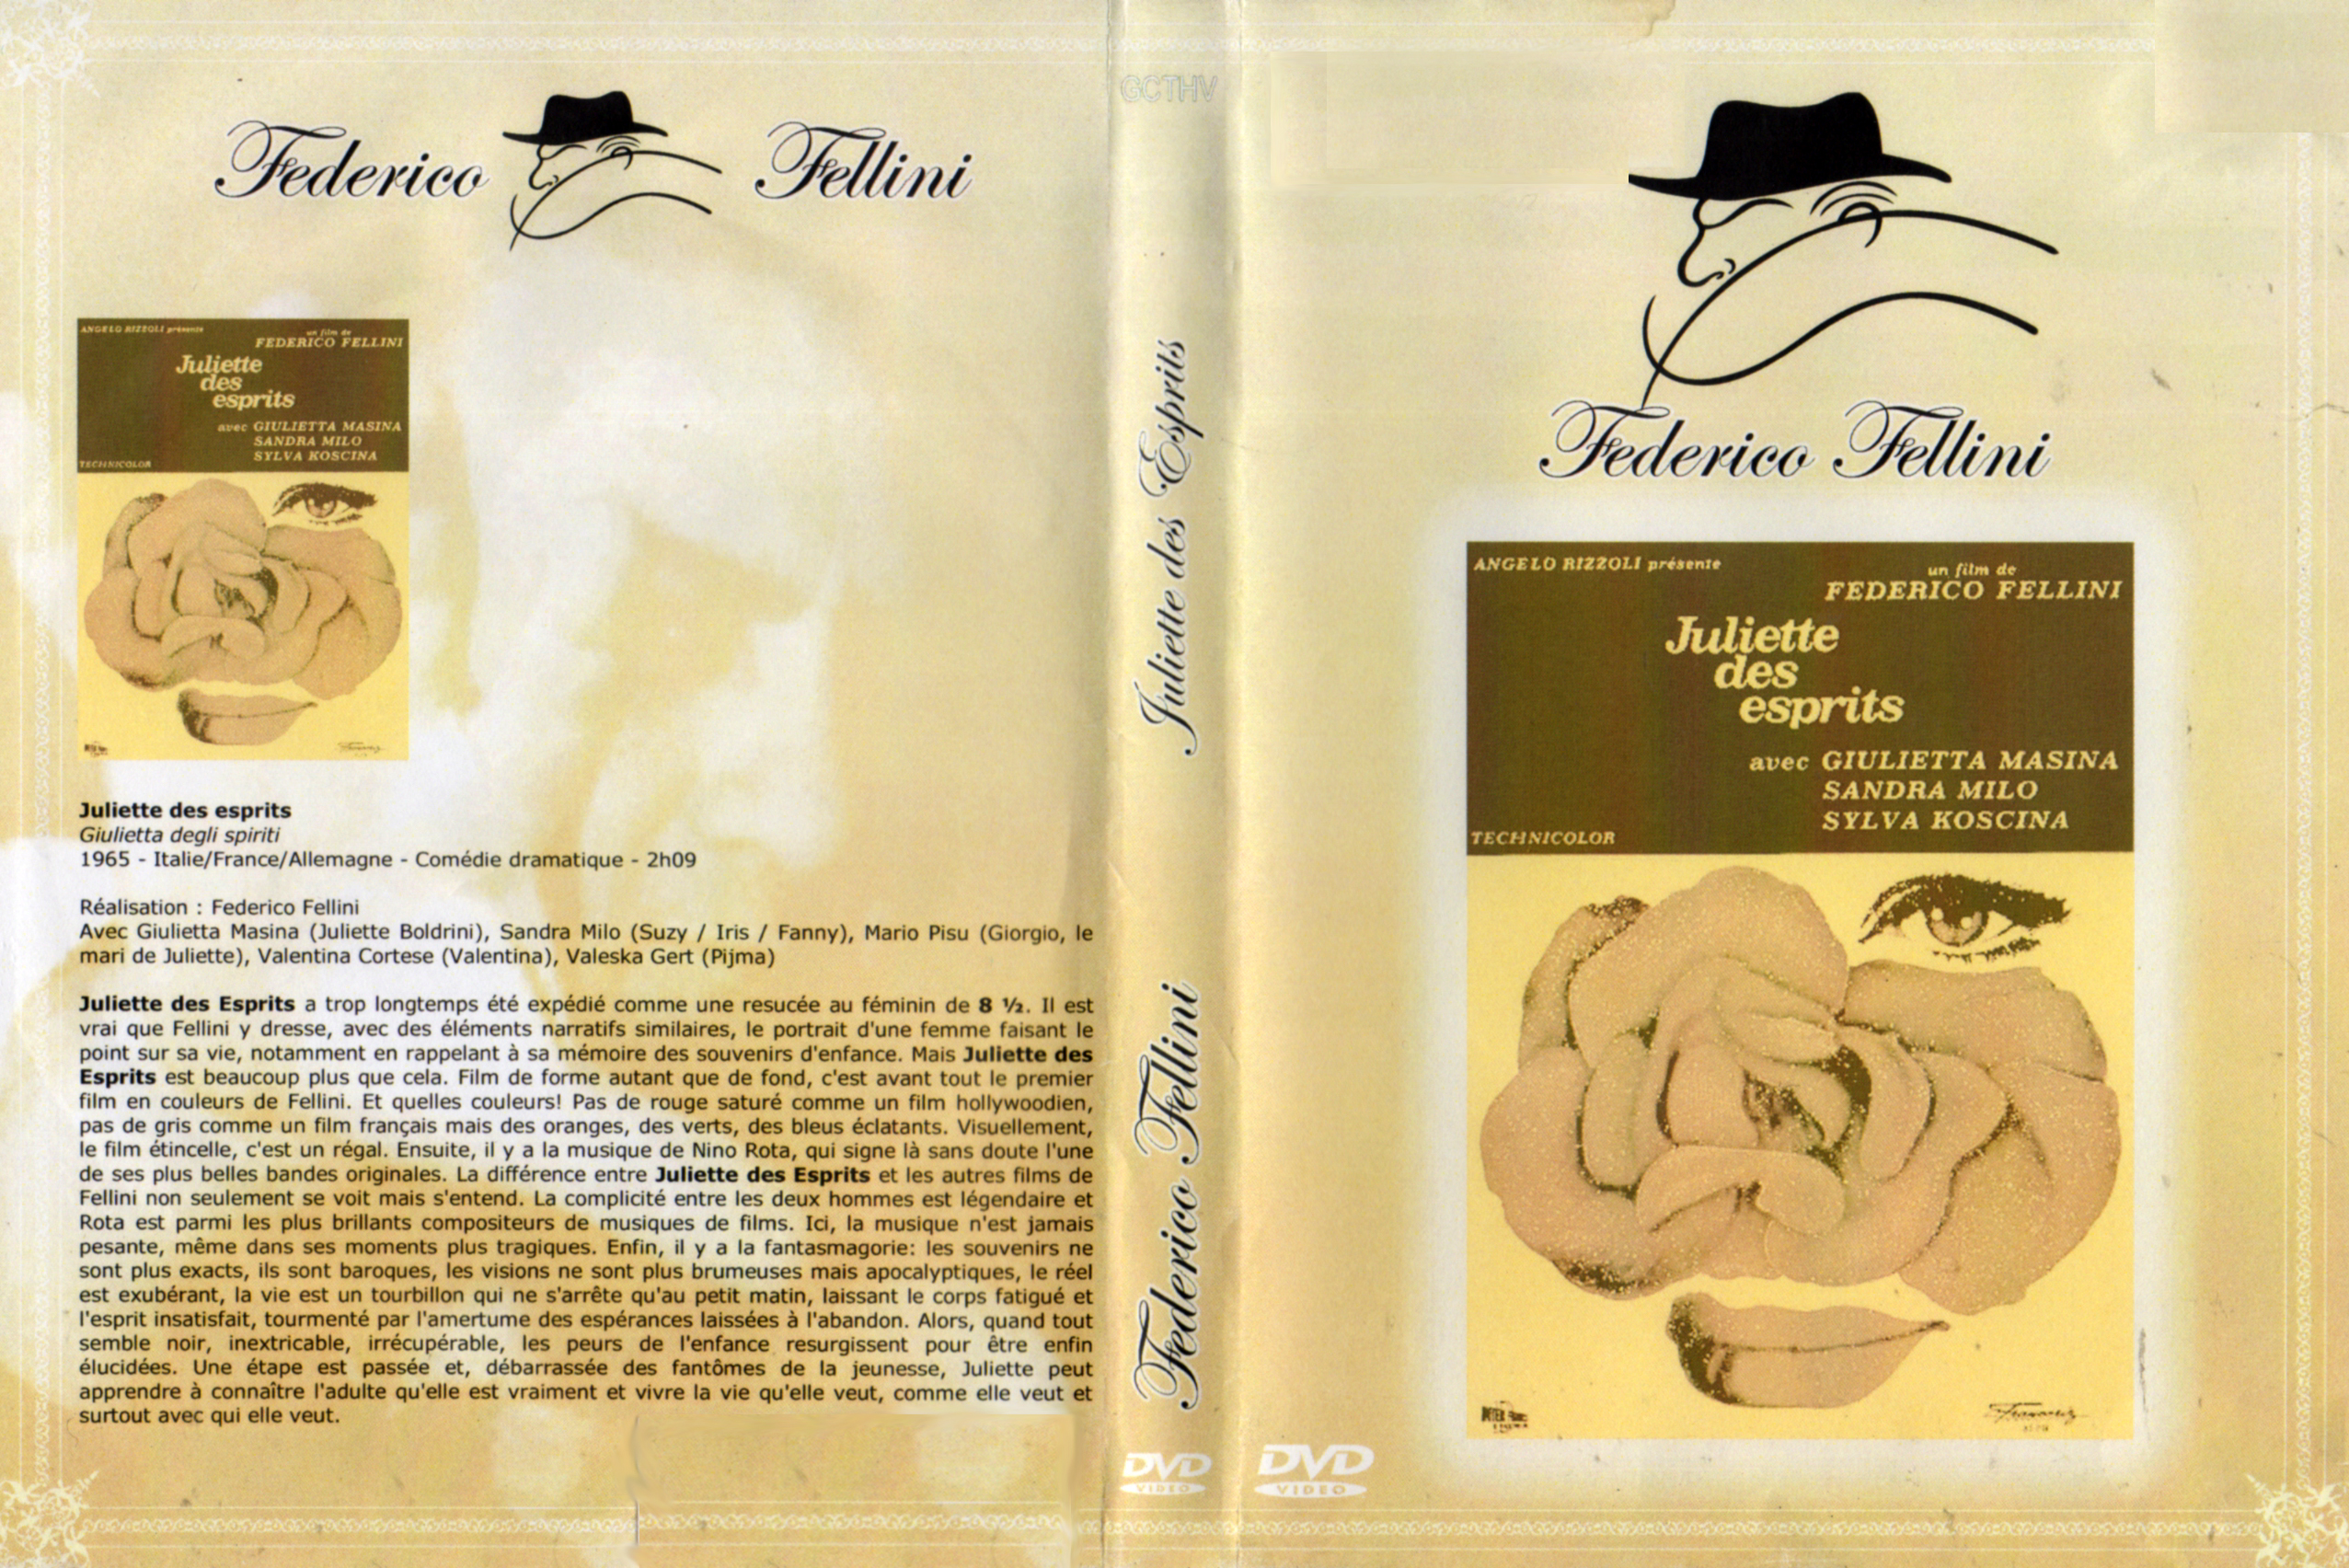 Jaquette DVD Juliette des esprits v2